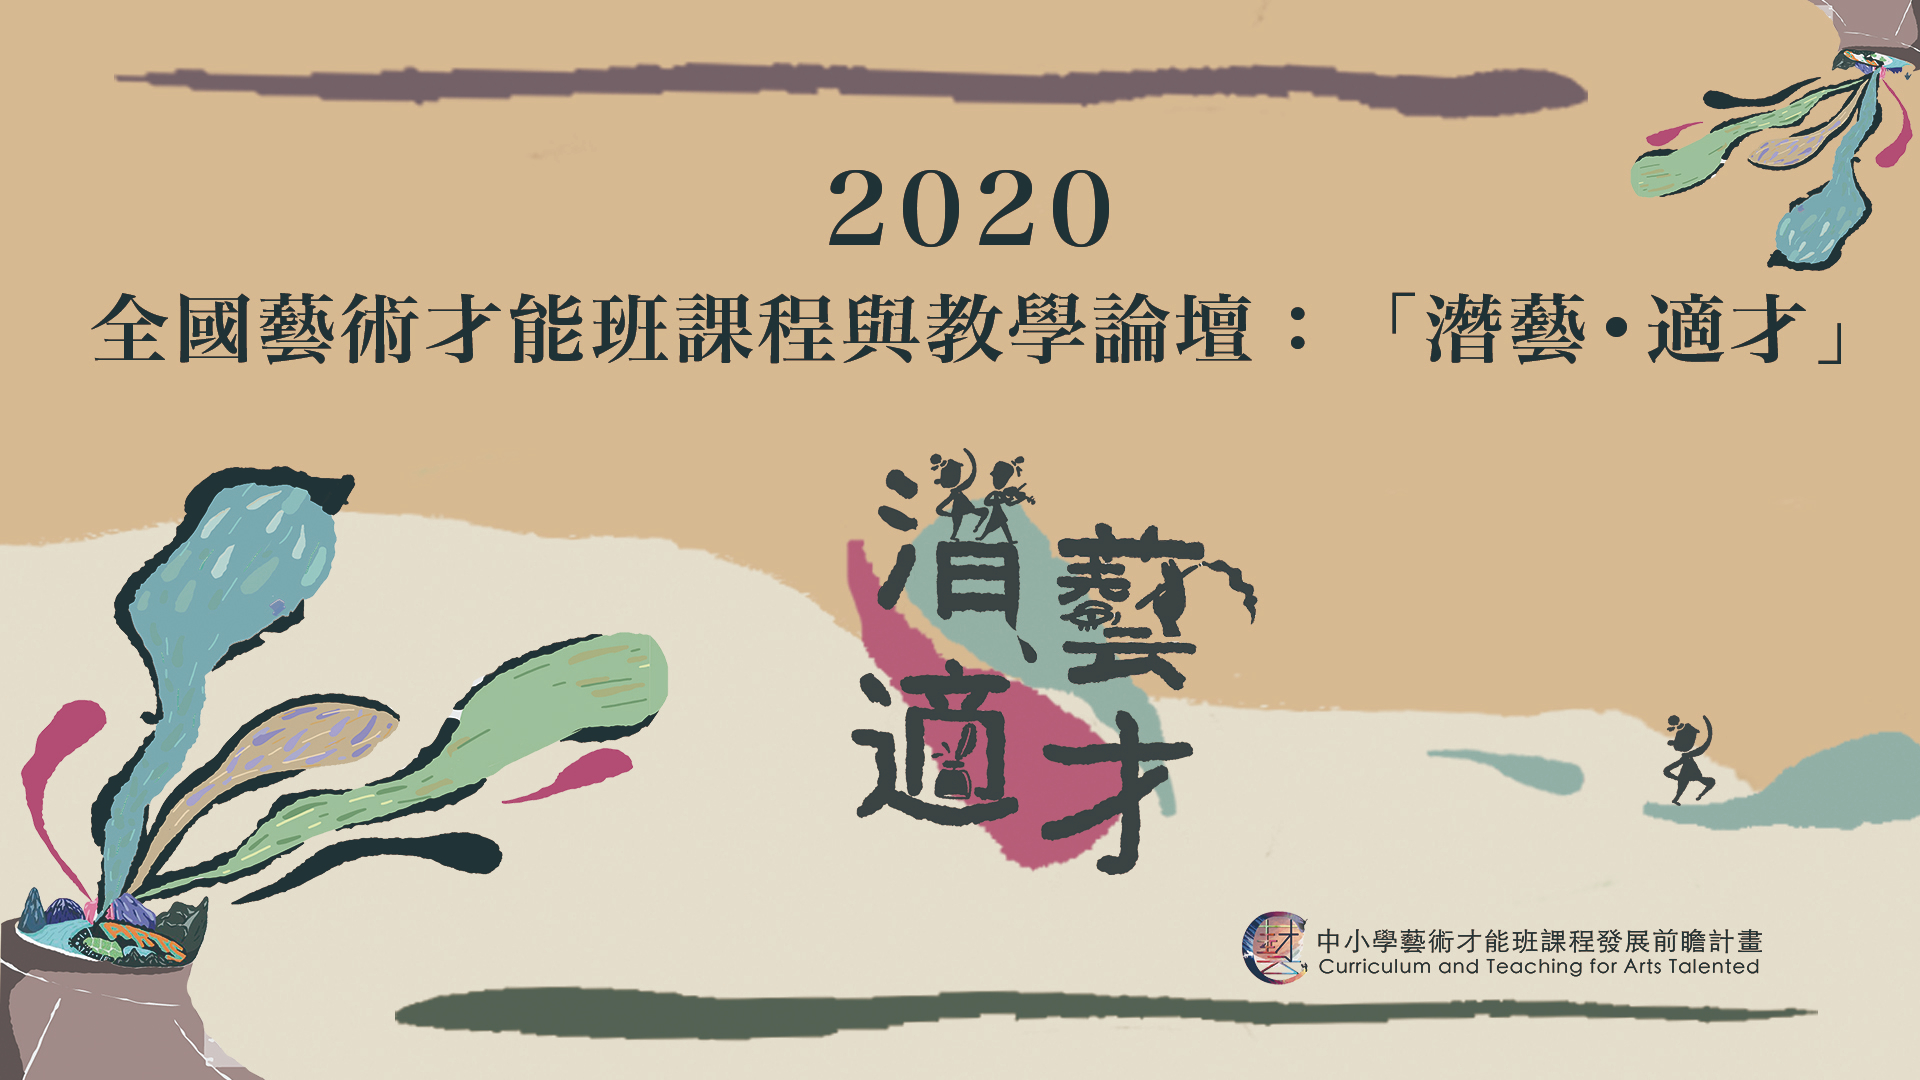 國立臺灣師範大學於12月5日（六）舉辦「2020全國藝術才能班課程與教學論壇：『潛藝˙適才』」，核發6小時時數